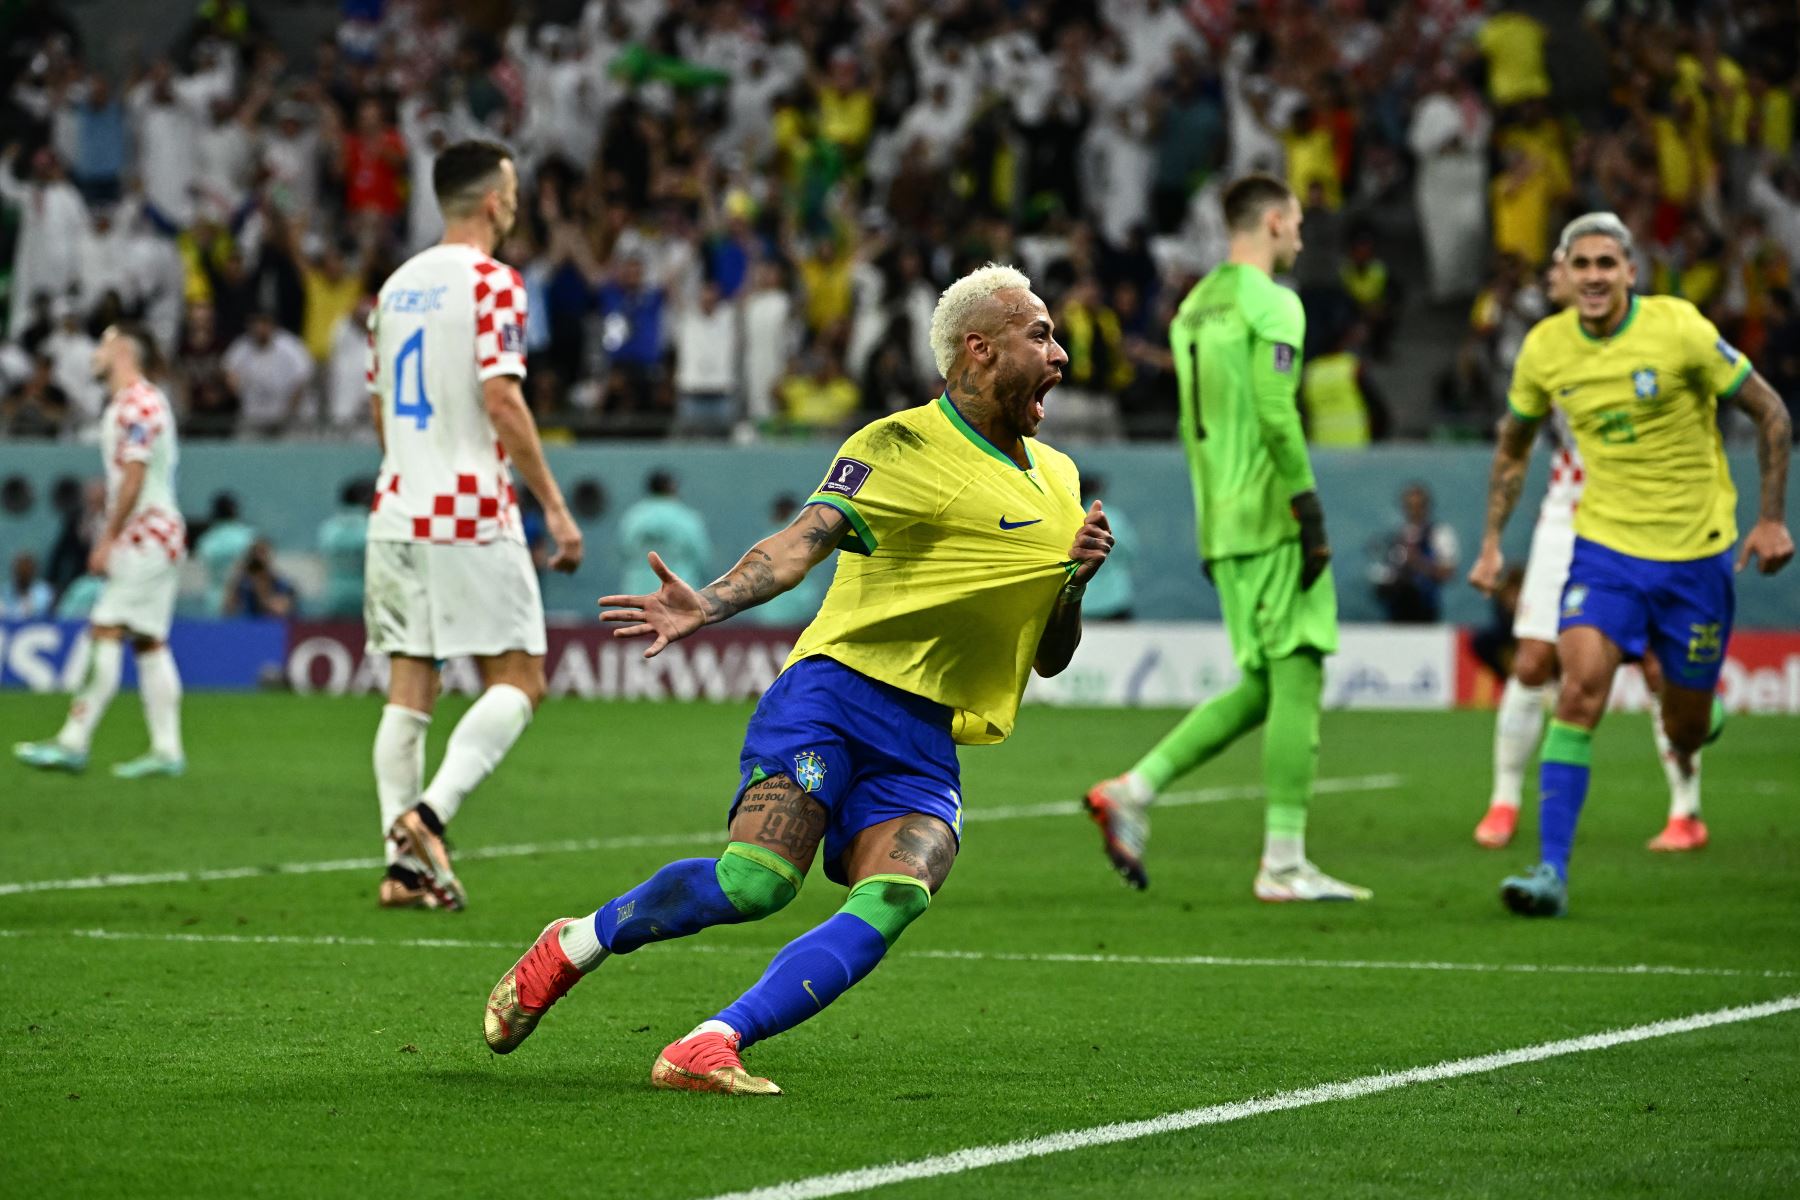 El delantero brasileño Neymar celebra marcar el primer gol de su equipo durante el partido de fútbol de cuartos de final de la Copa Mundial Qatar 2022 entre Croacia y Brasil en el Education City Stadium en Al-Rayyan, al oeste de Doha, el 9 de diciembre de 2022.
Foto: AFP